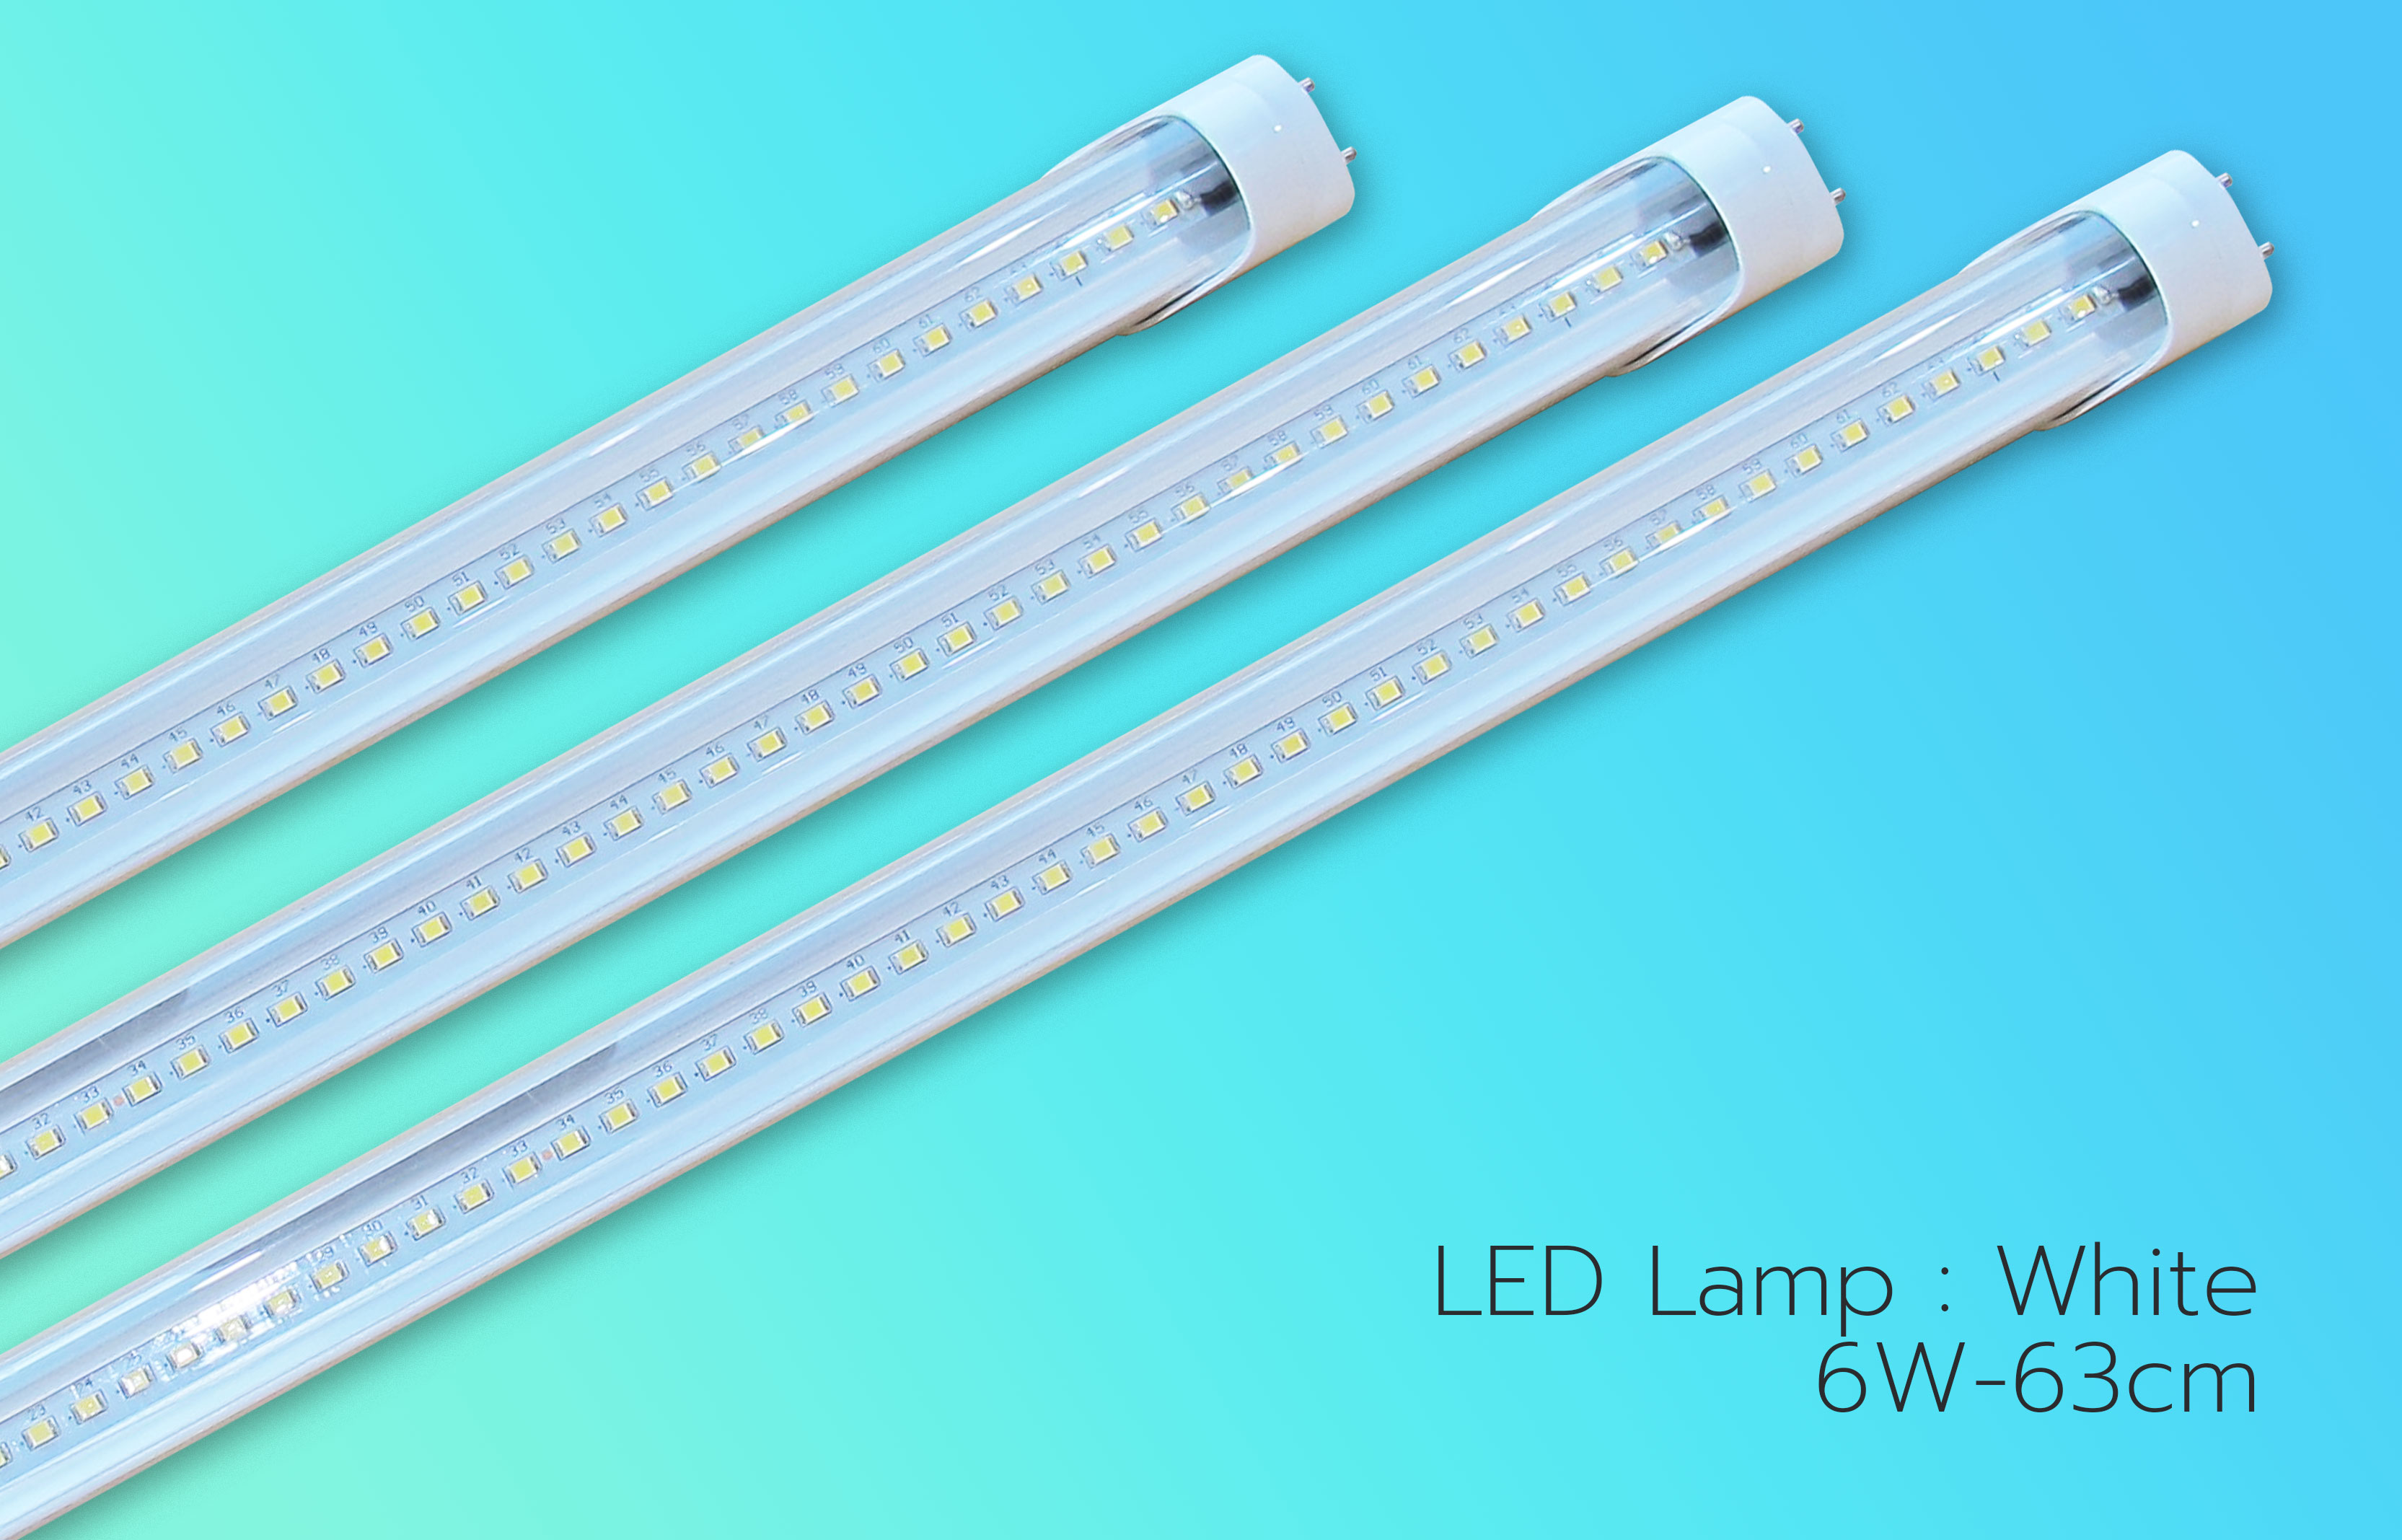 LED-Lamp-6W-63cm